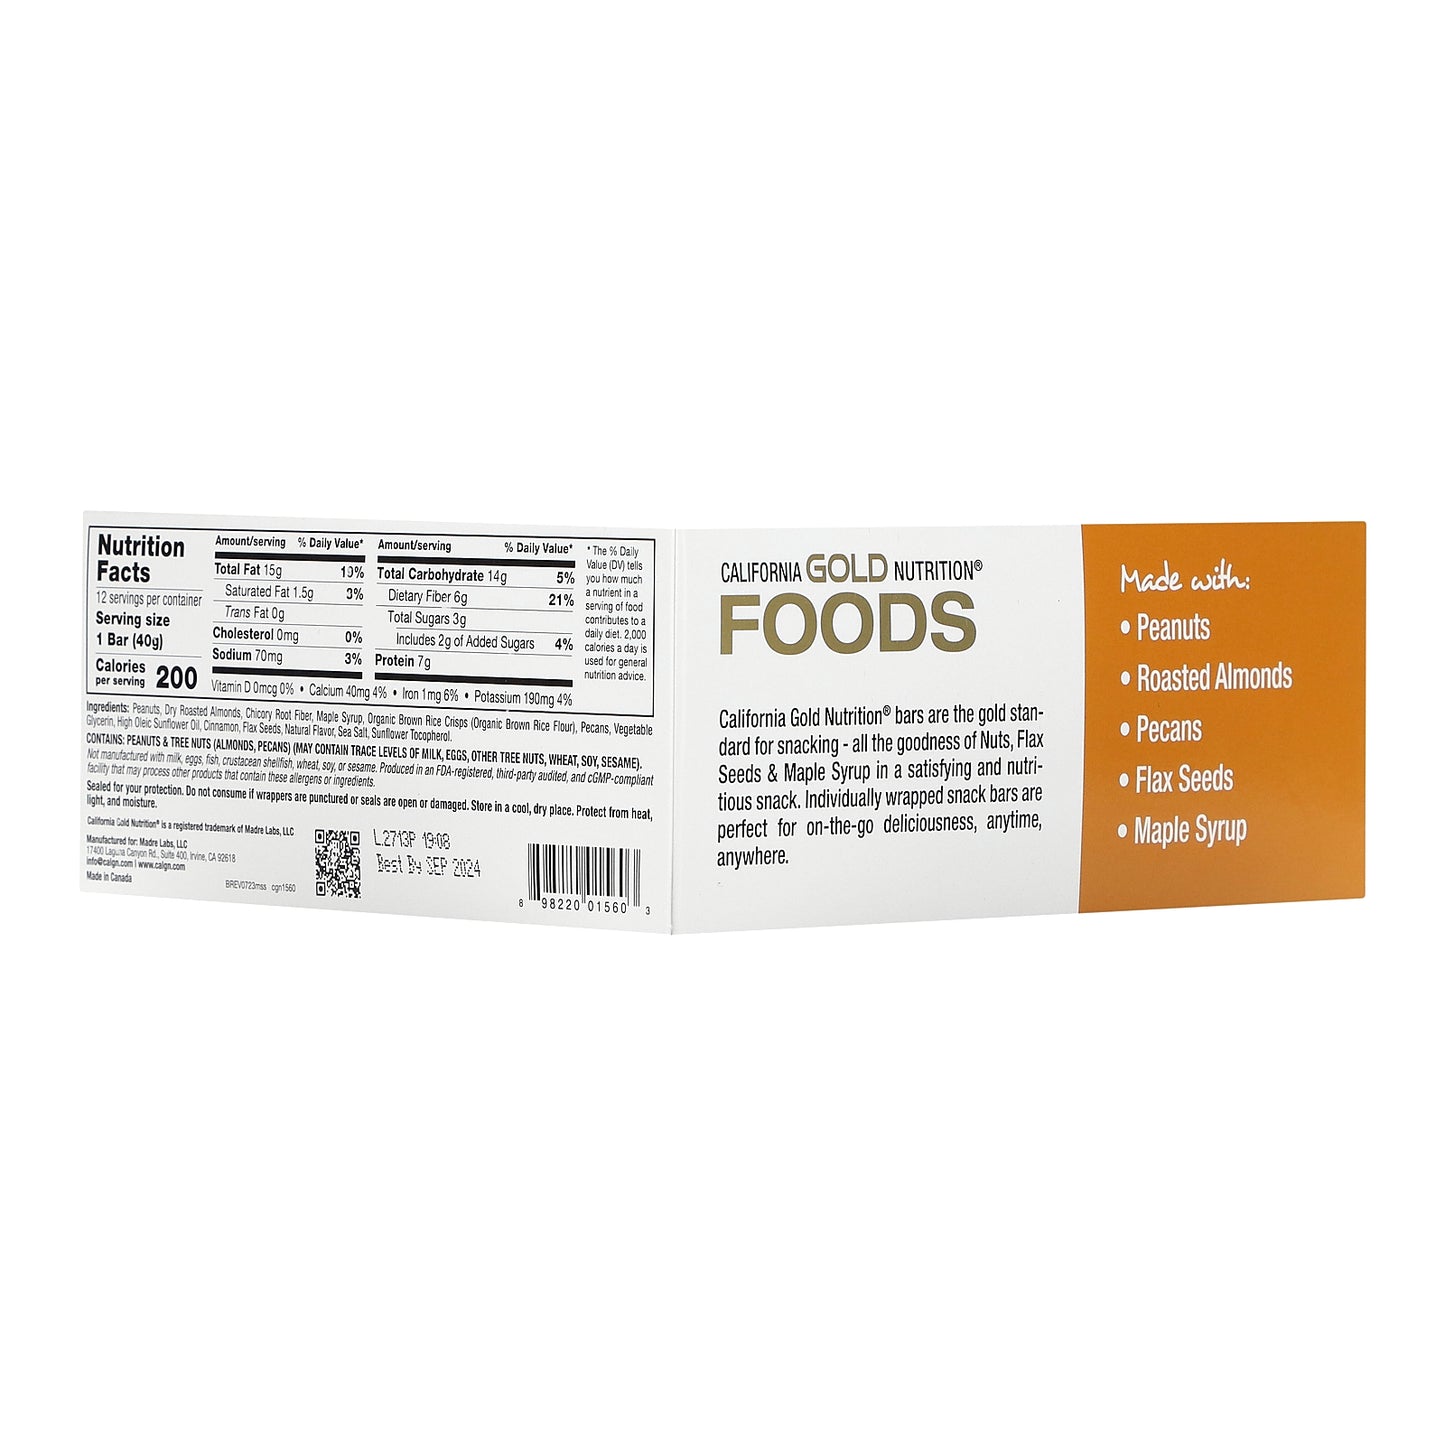 California Gold Nutrition, FOODS - Maple Sea Salt Bars, 12 Bars, 1.4 oz (40 g) Each